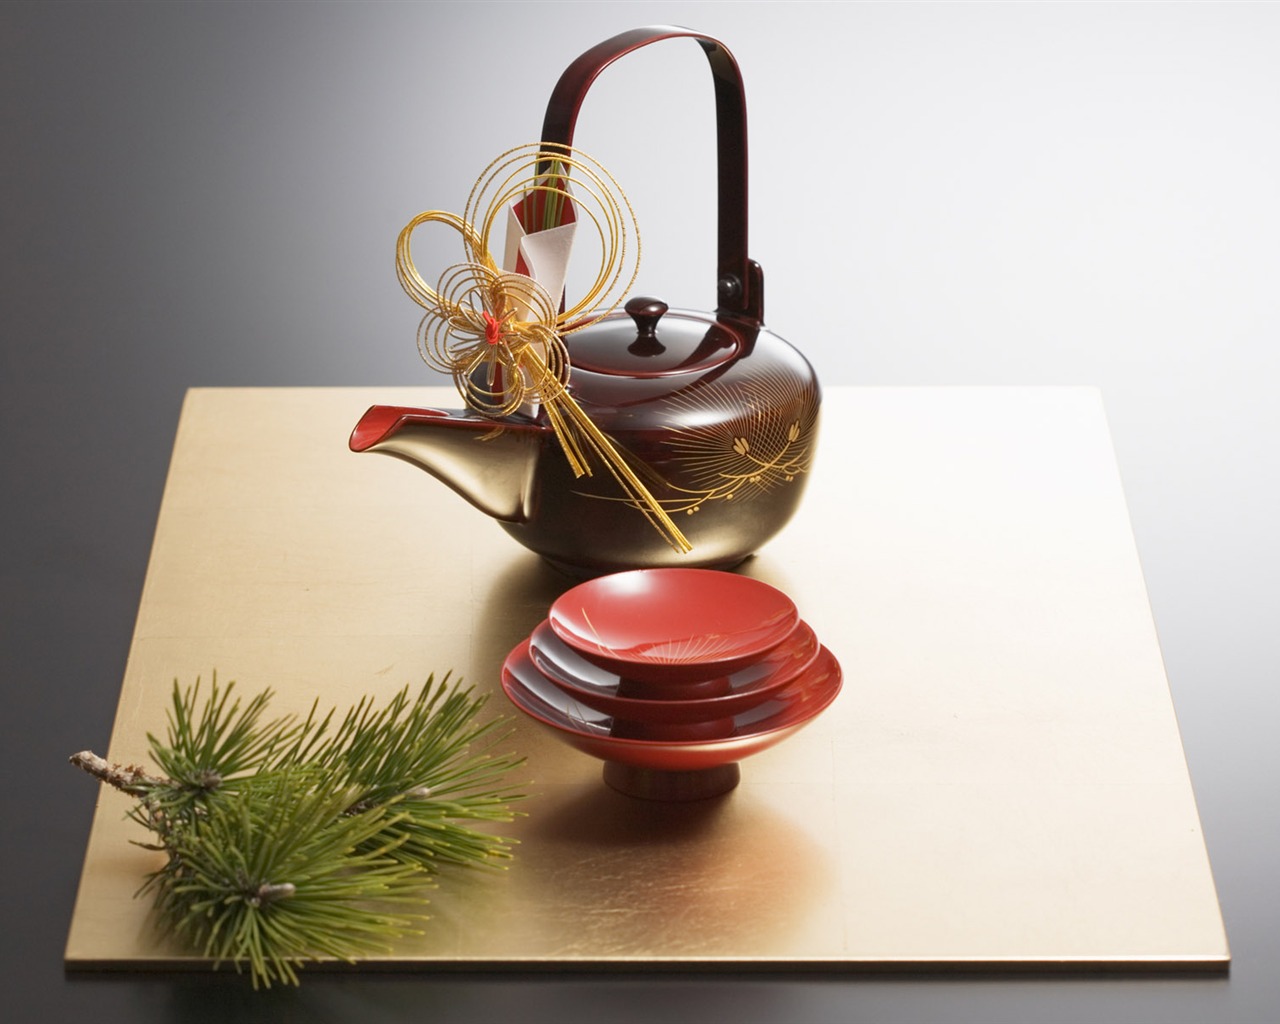 Fondos de año nuevo japonés Cultura (2) #6 - 1280x1024